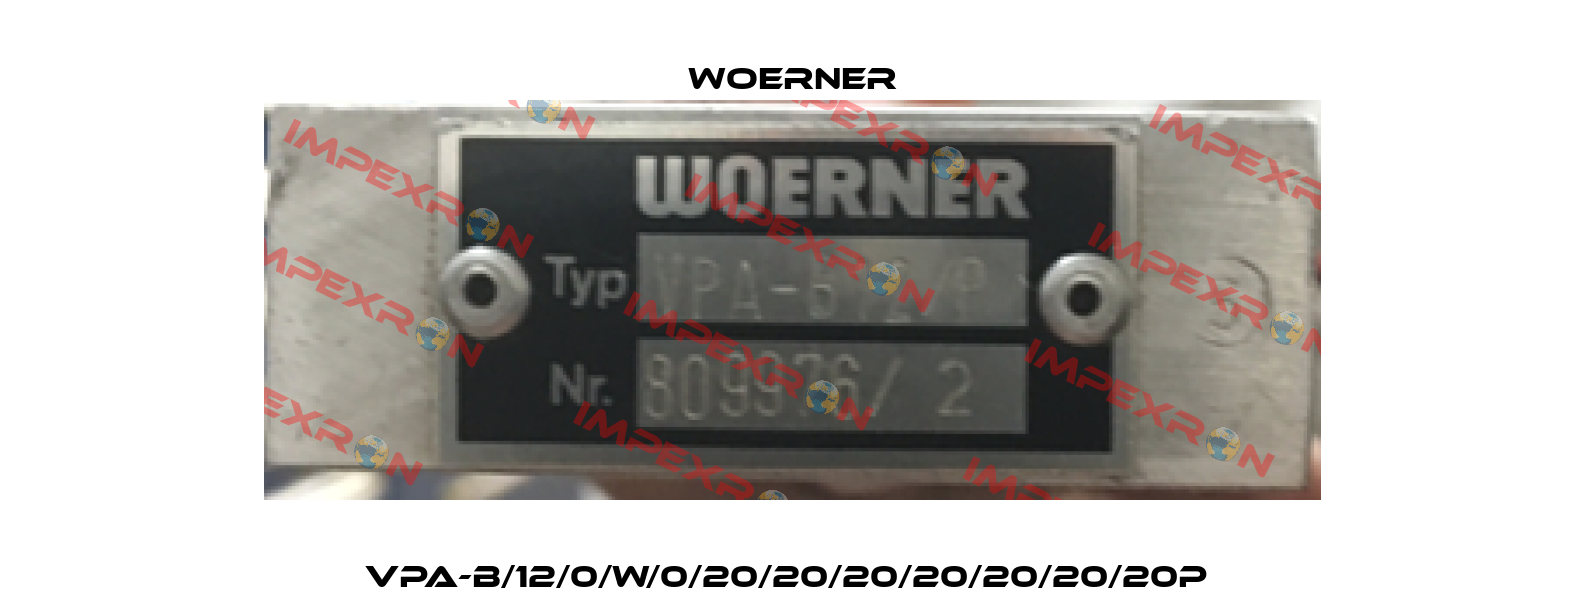 VPA-B/12/0/W/0/20/20/20/20/20/20/20P  Woerner